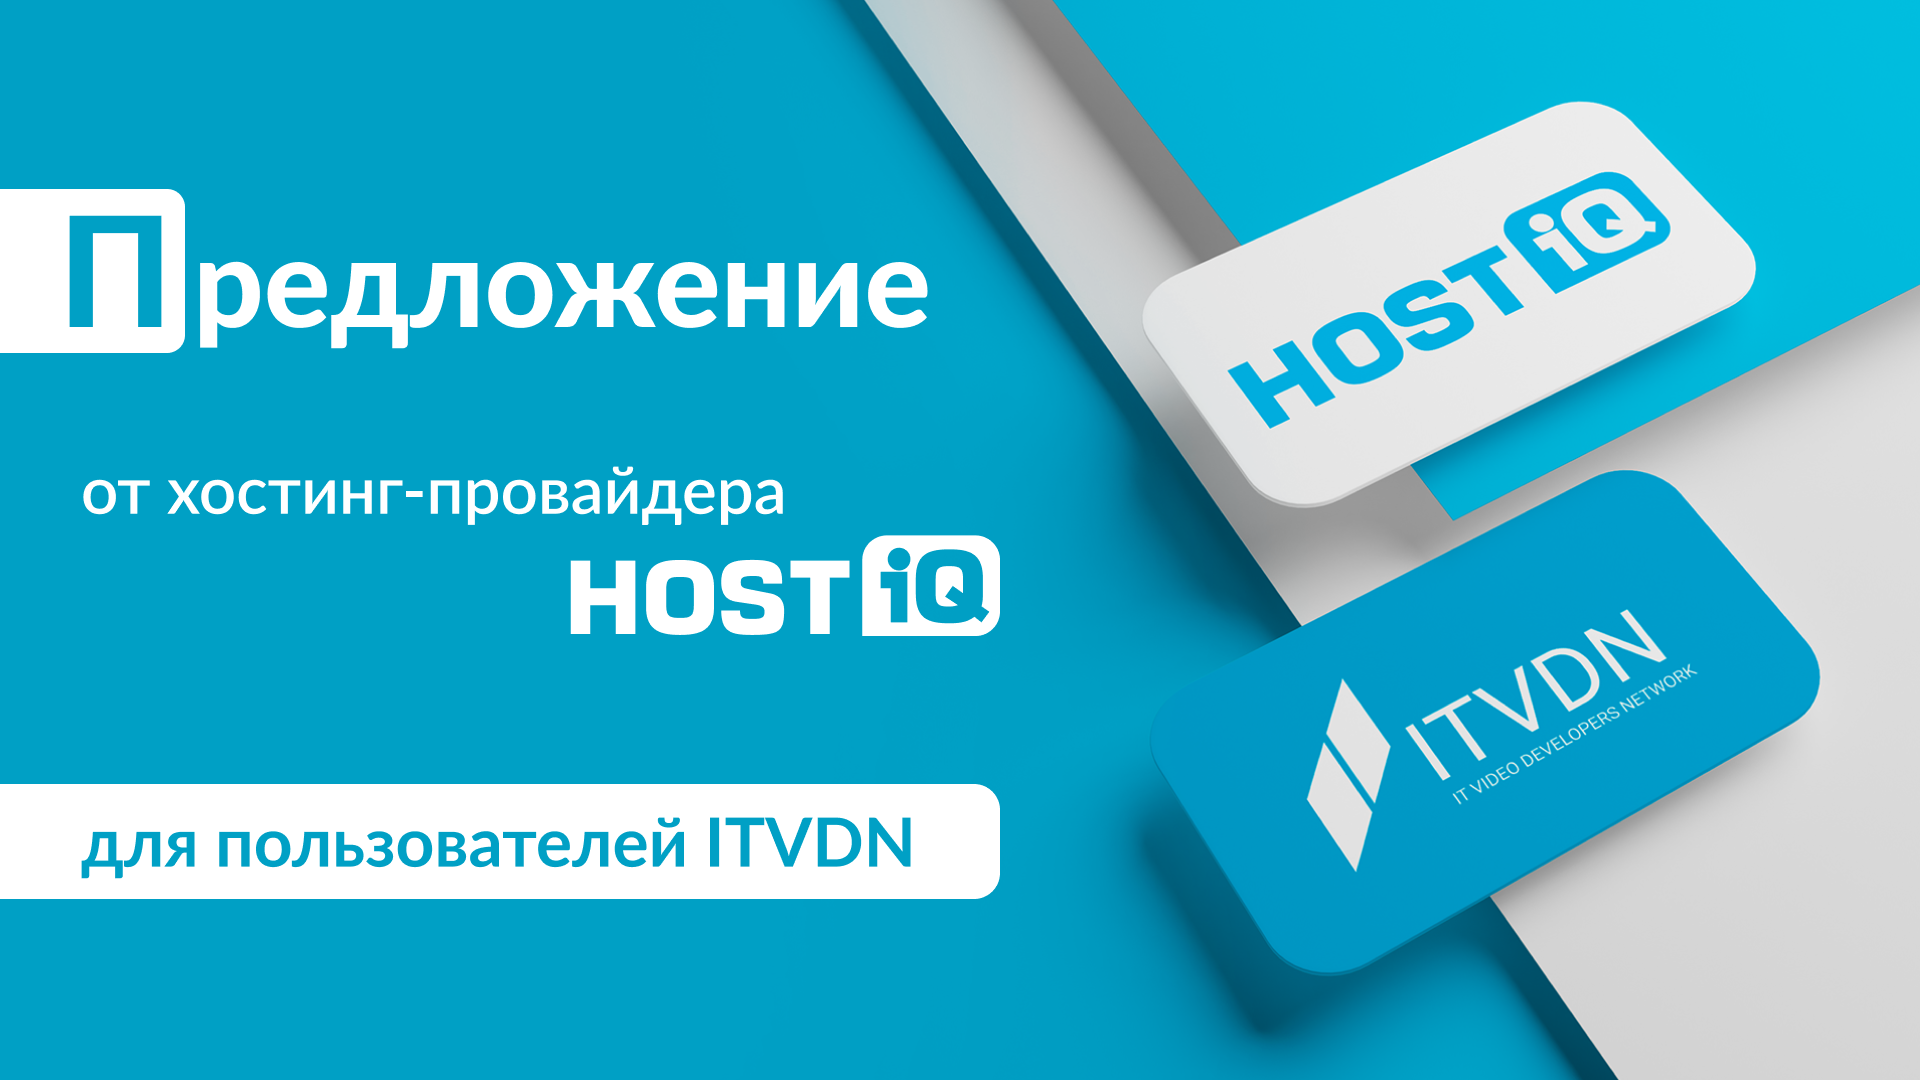 Специальное предложение от HOSTiQ.ua для студентов ITVDN